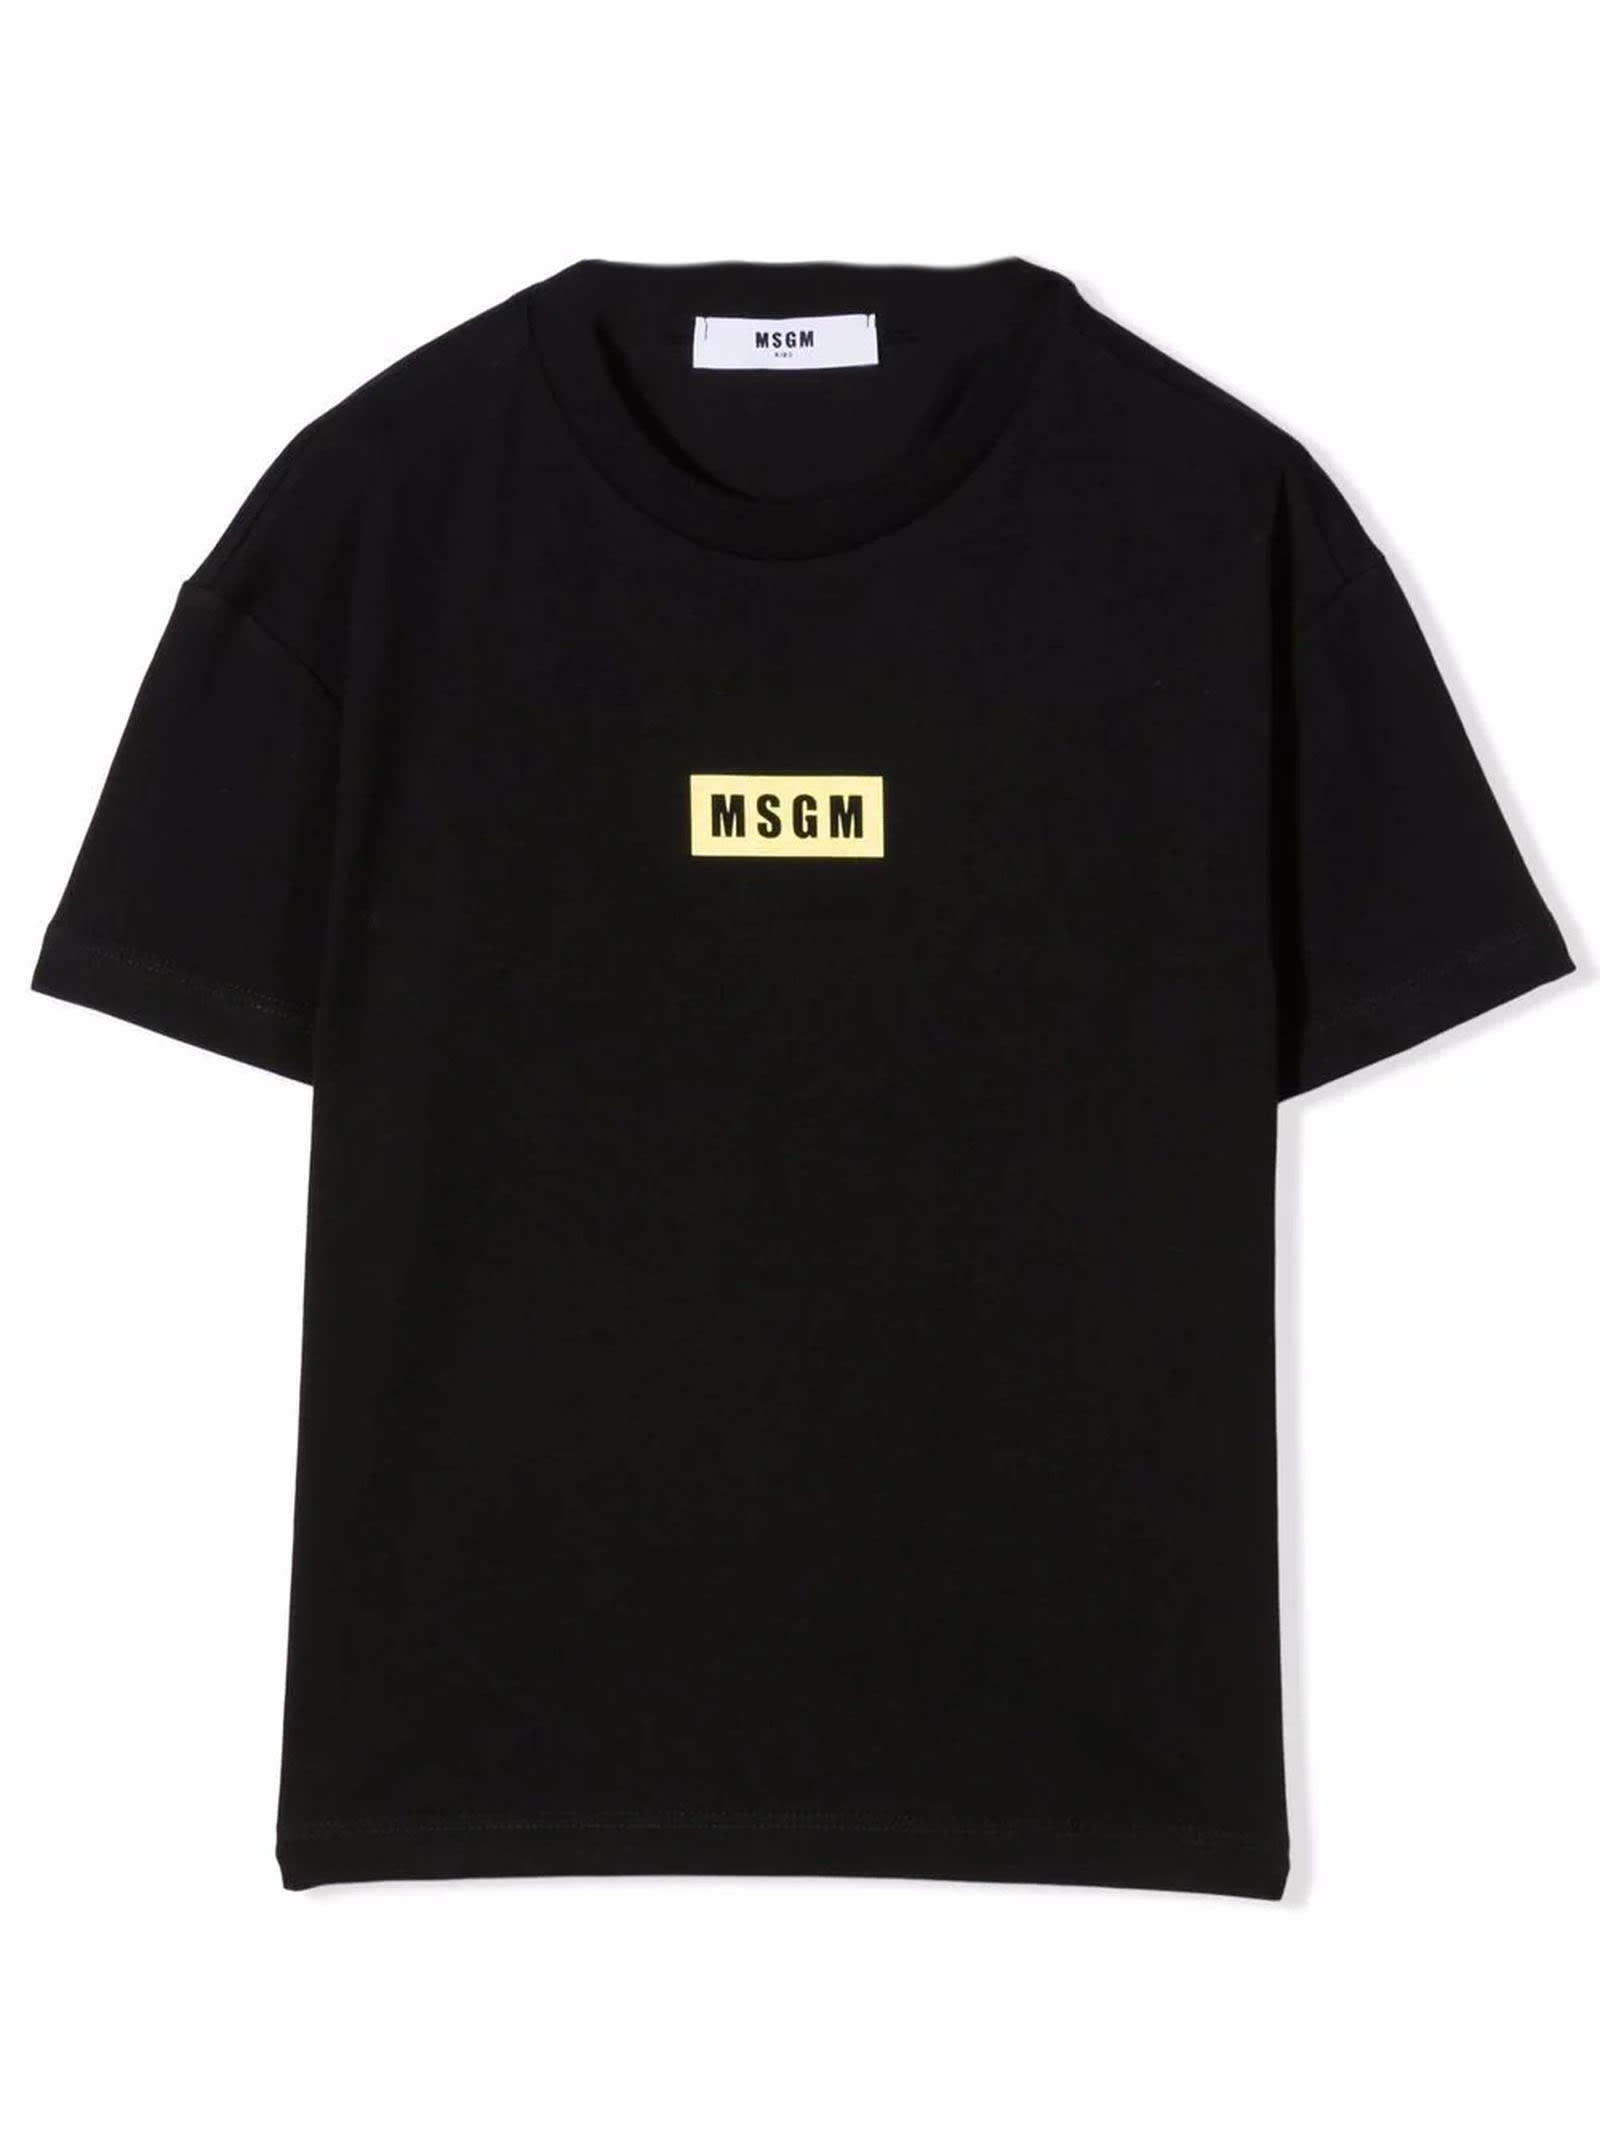 MSGM Black Cotton Tshirt